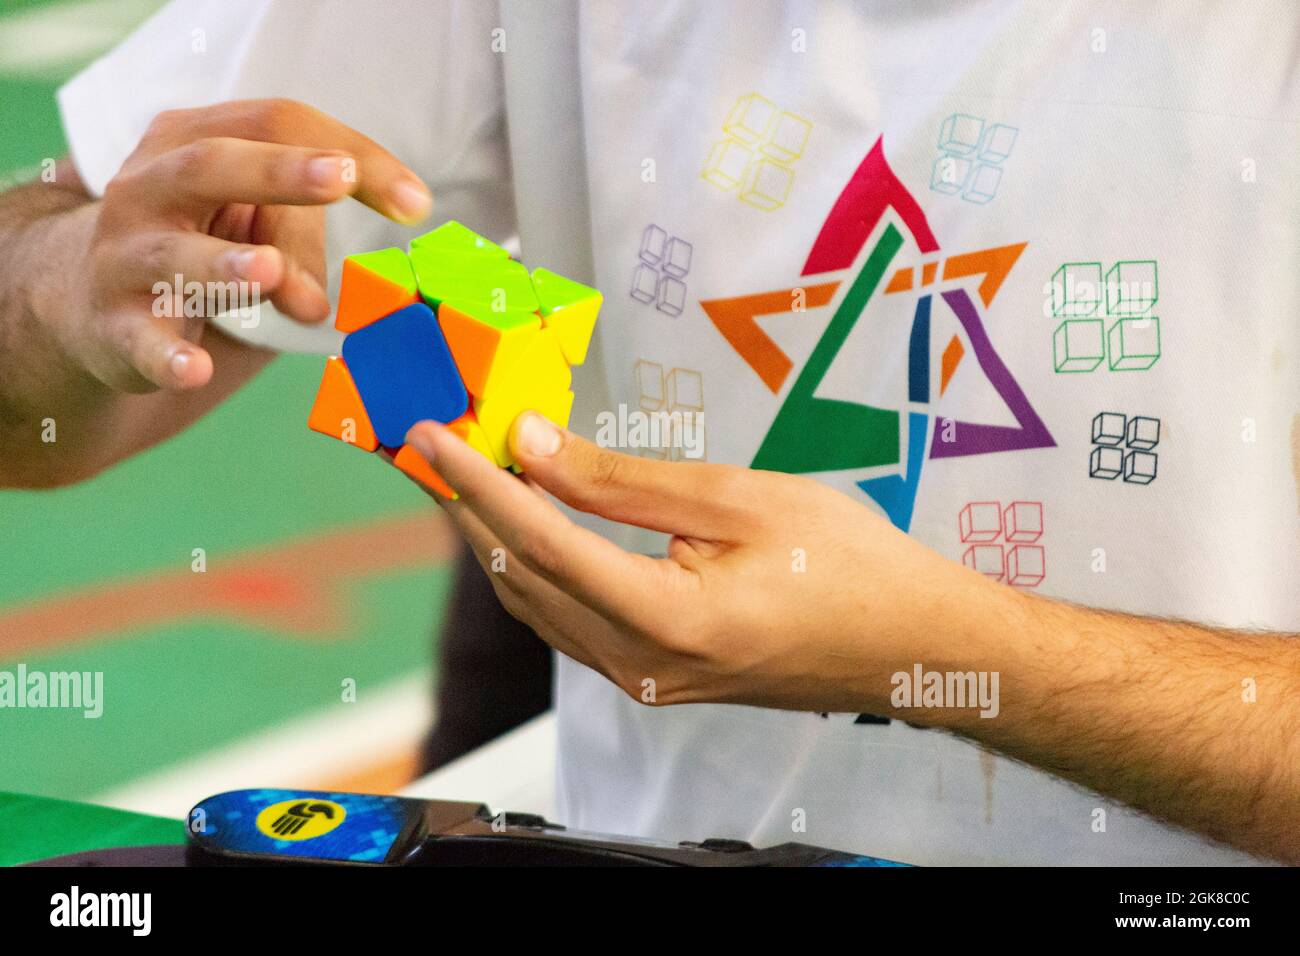 Nahaufnahme der Hände, die einen Rubik's Cube lösen. Farbpuzzle. Stockfoto